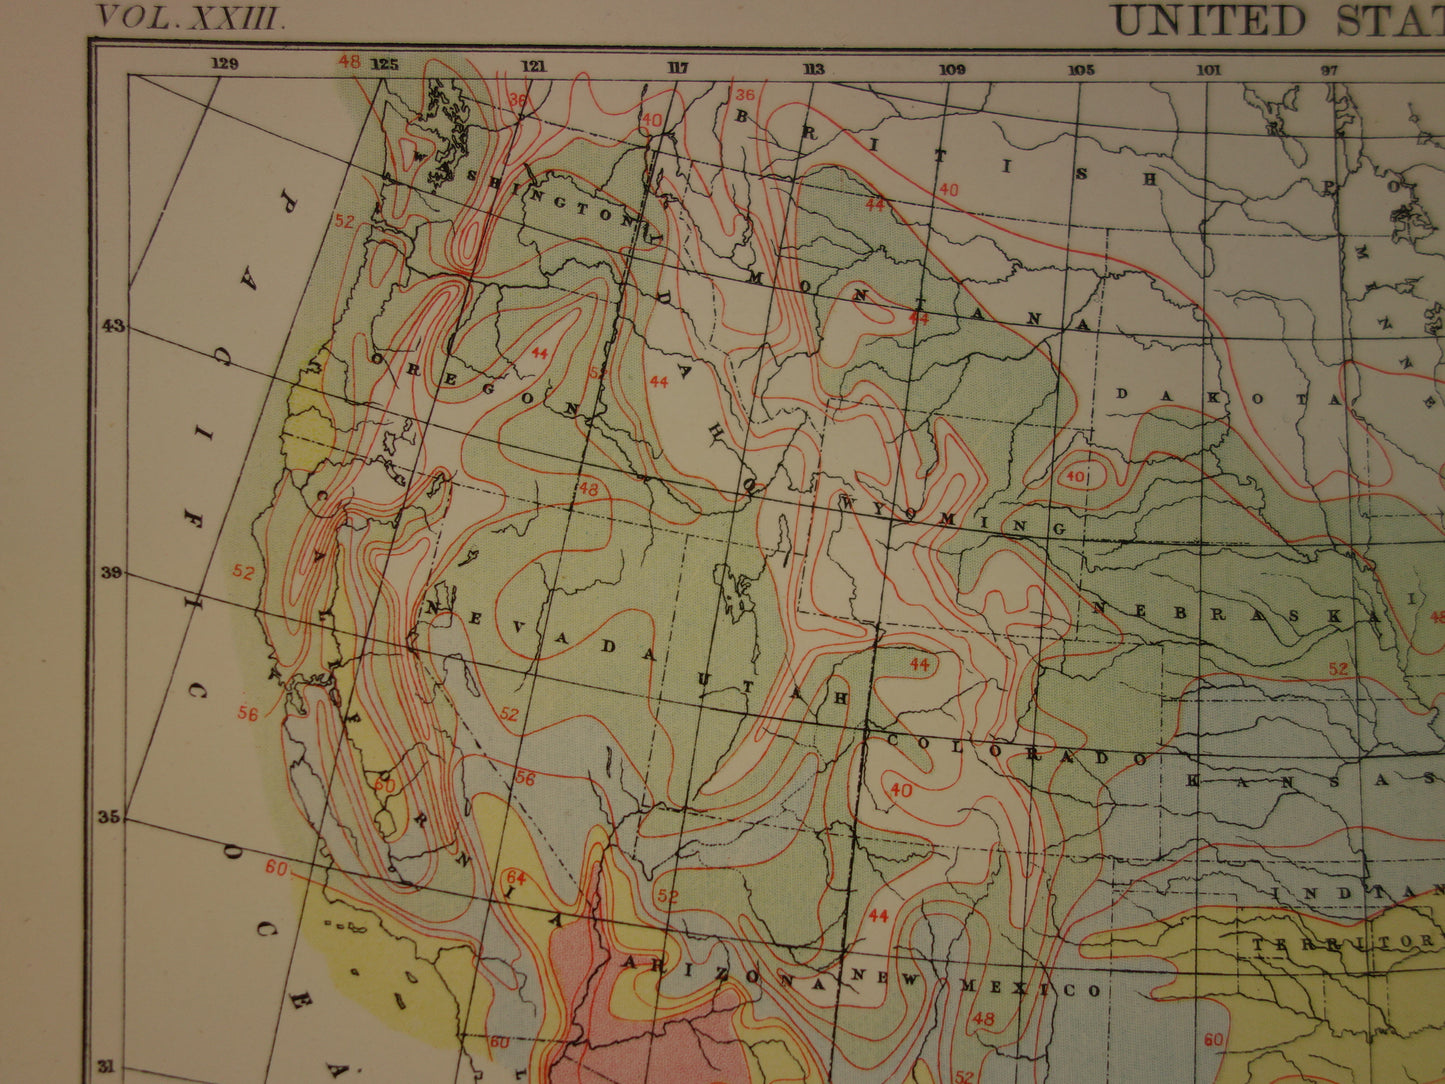 VERENIGDE STATEN Oude regen- en temperatuur kaart van de VS uit 1888 originele antieke klimaatkaart over neerslag - vintage meteorologie print poster van Amerika